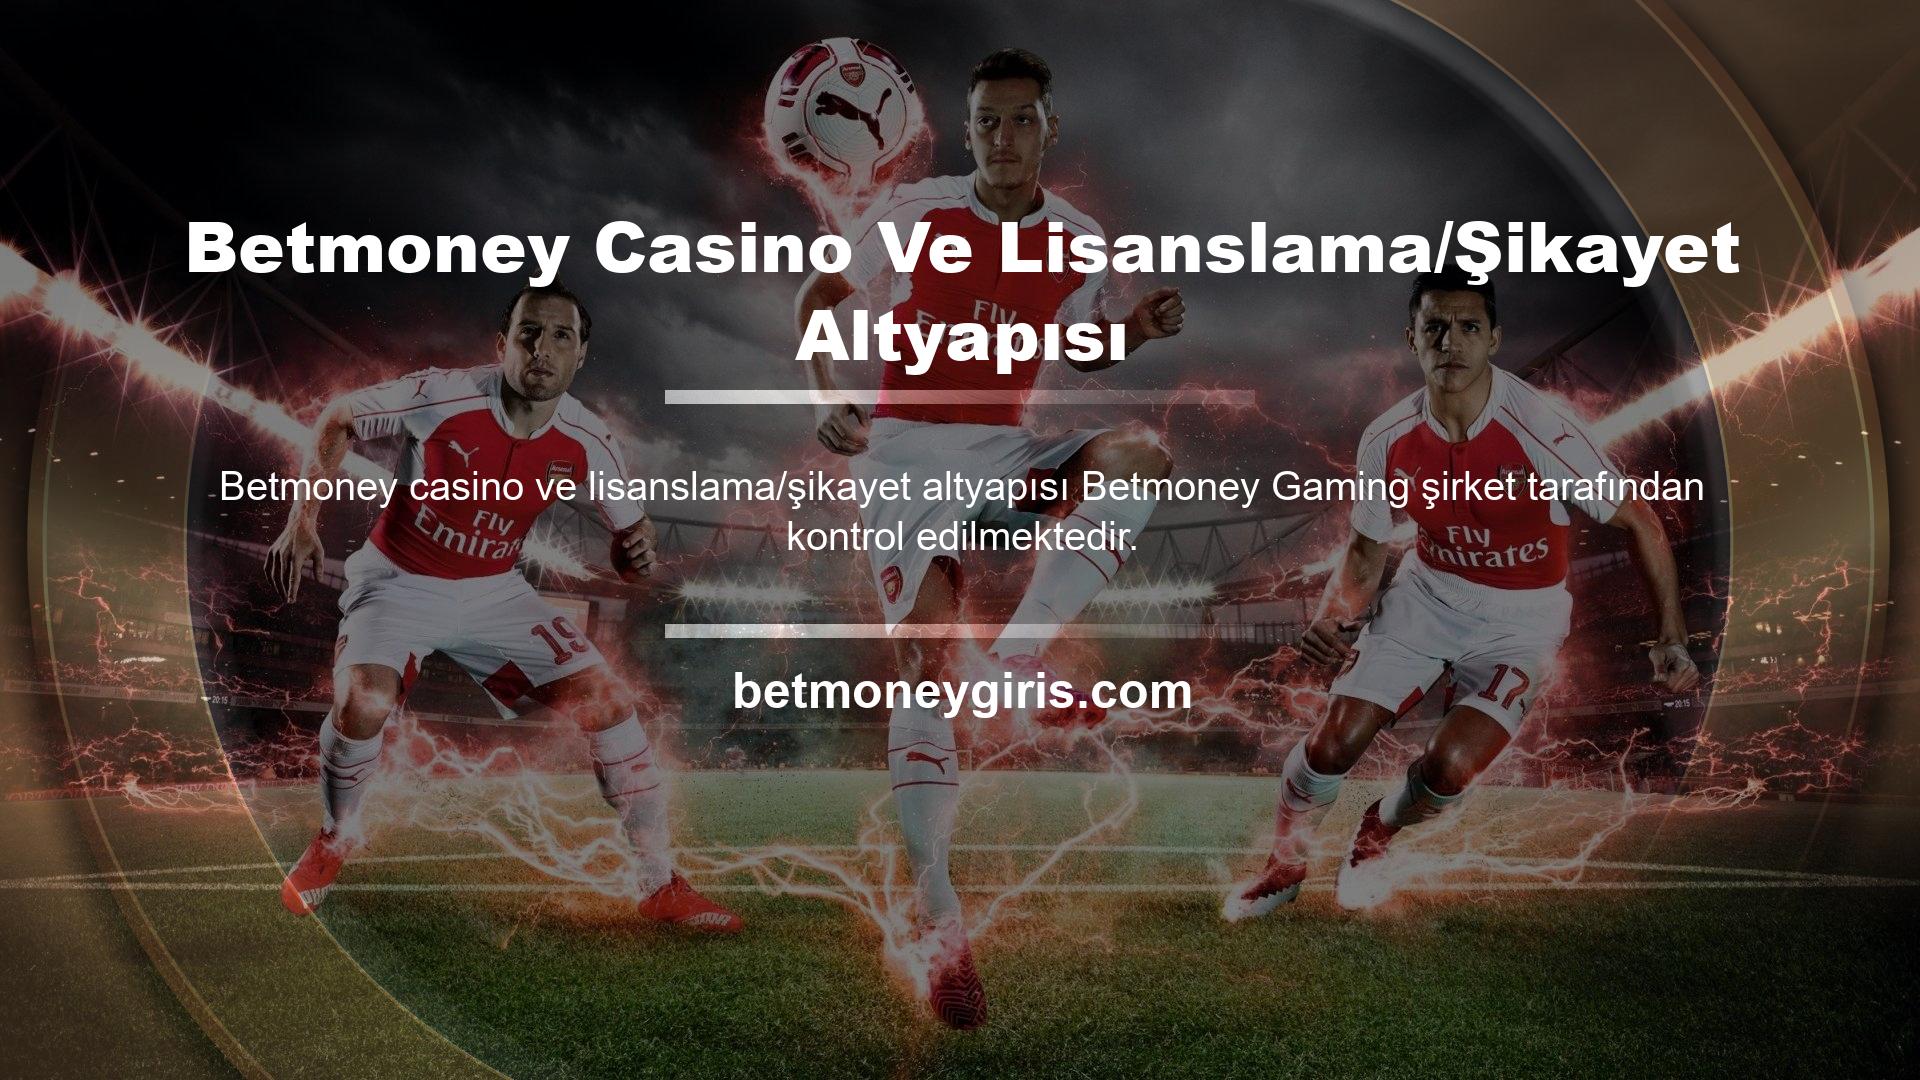 Betmoney Casino Ve Lisanslama